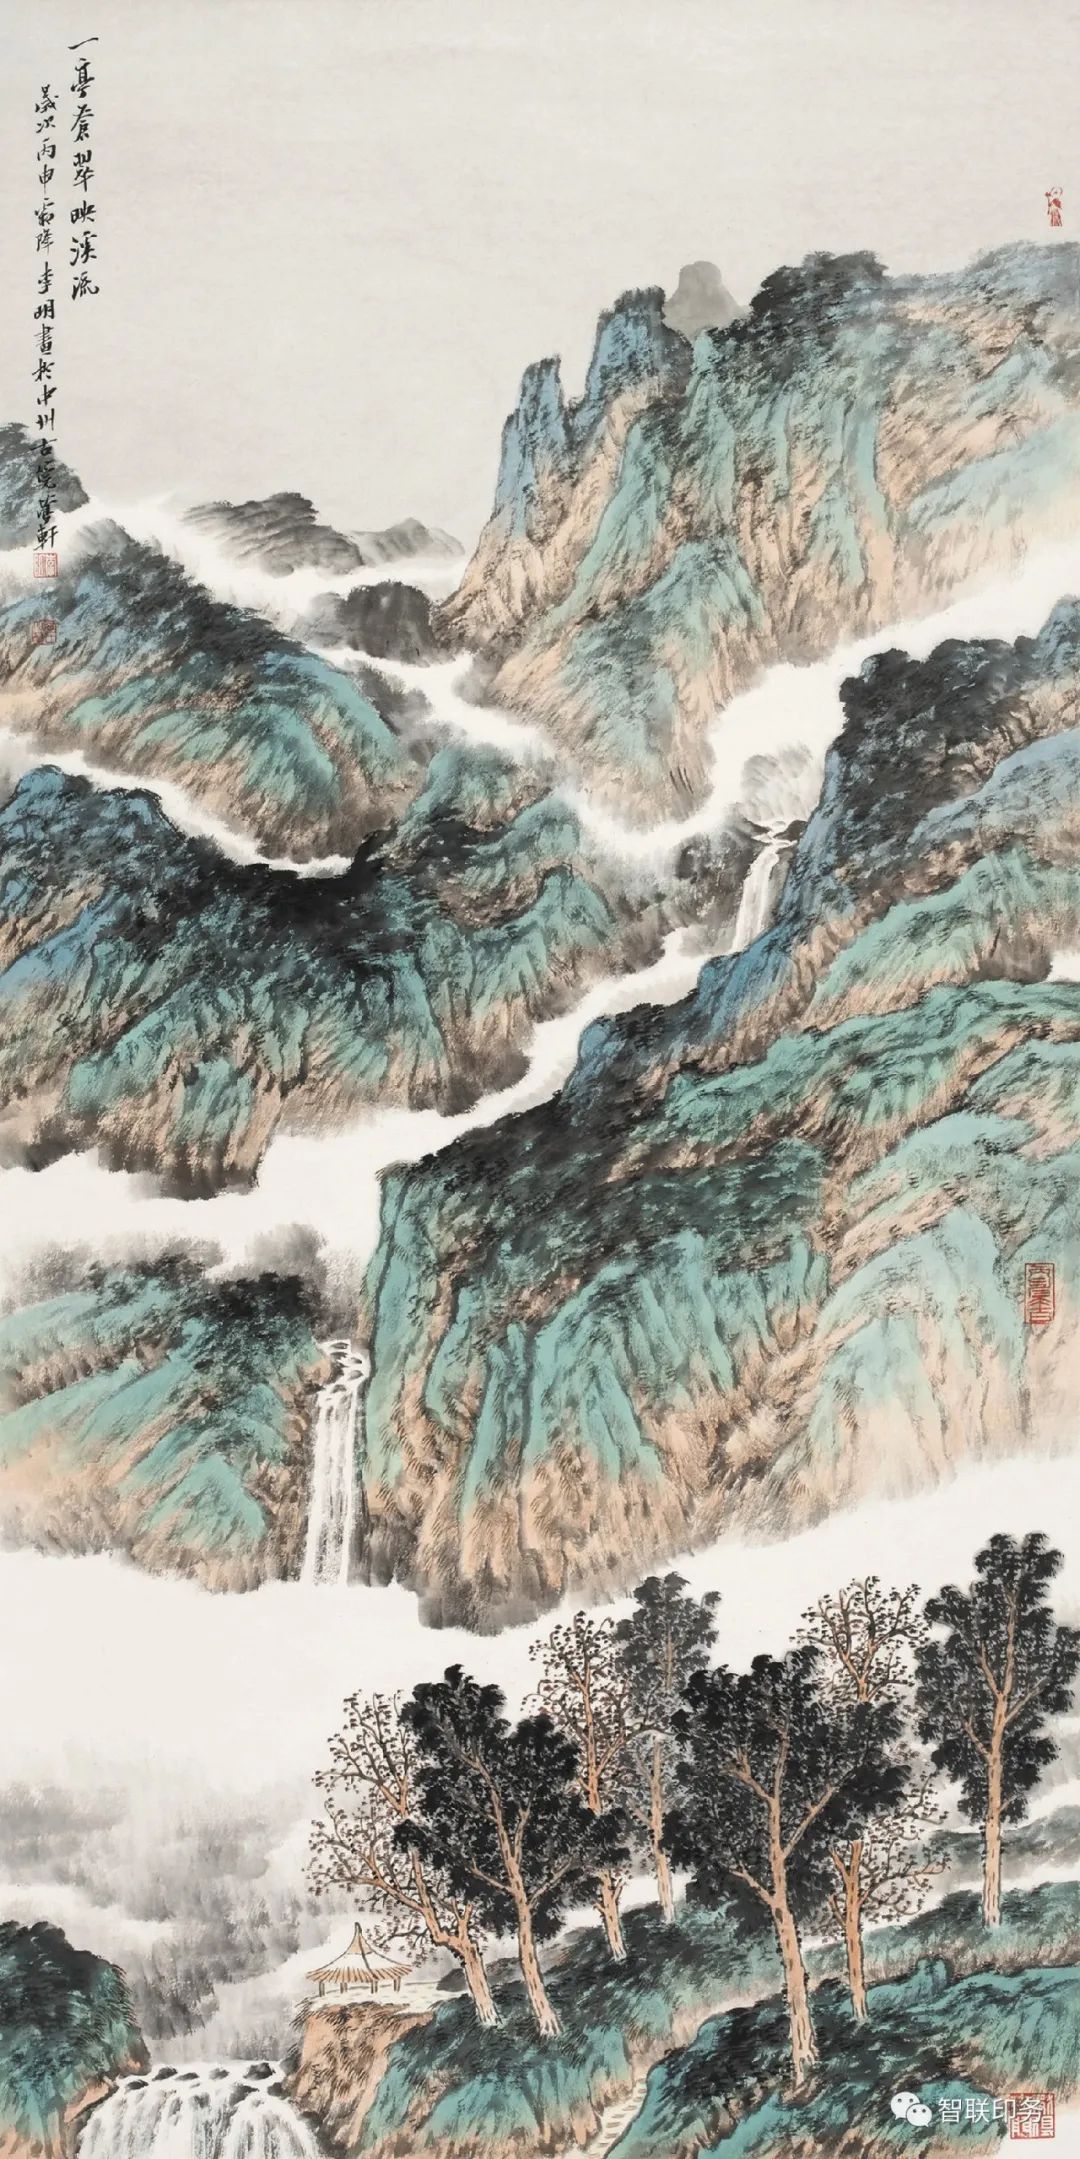 博大深厚 兼容并存——著名画家李明谈青绿山水画创作